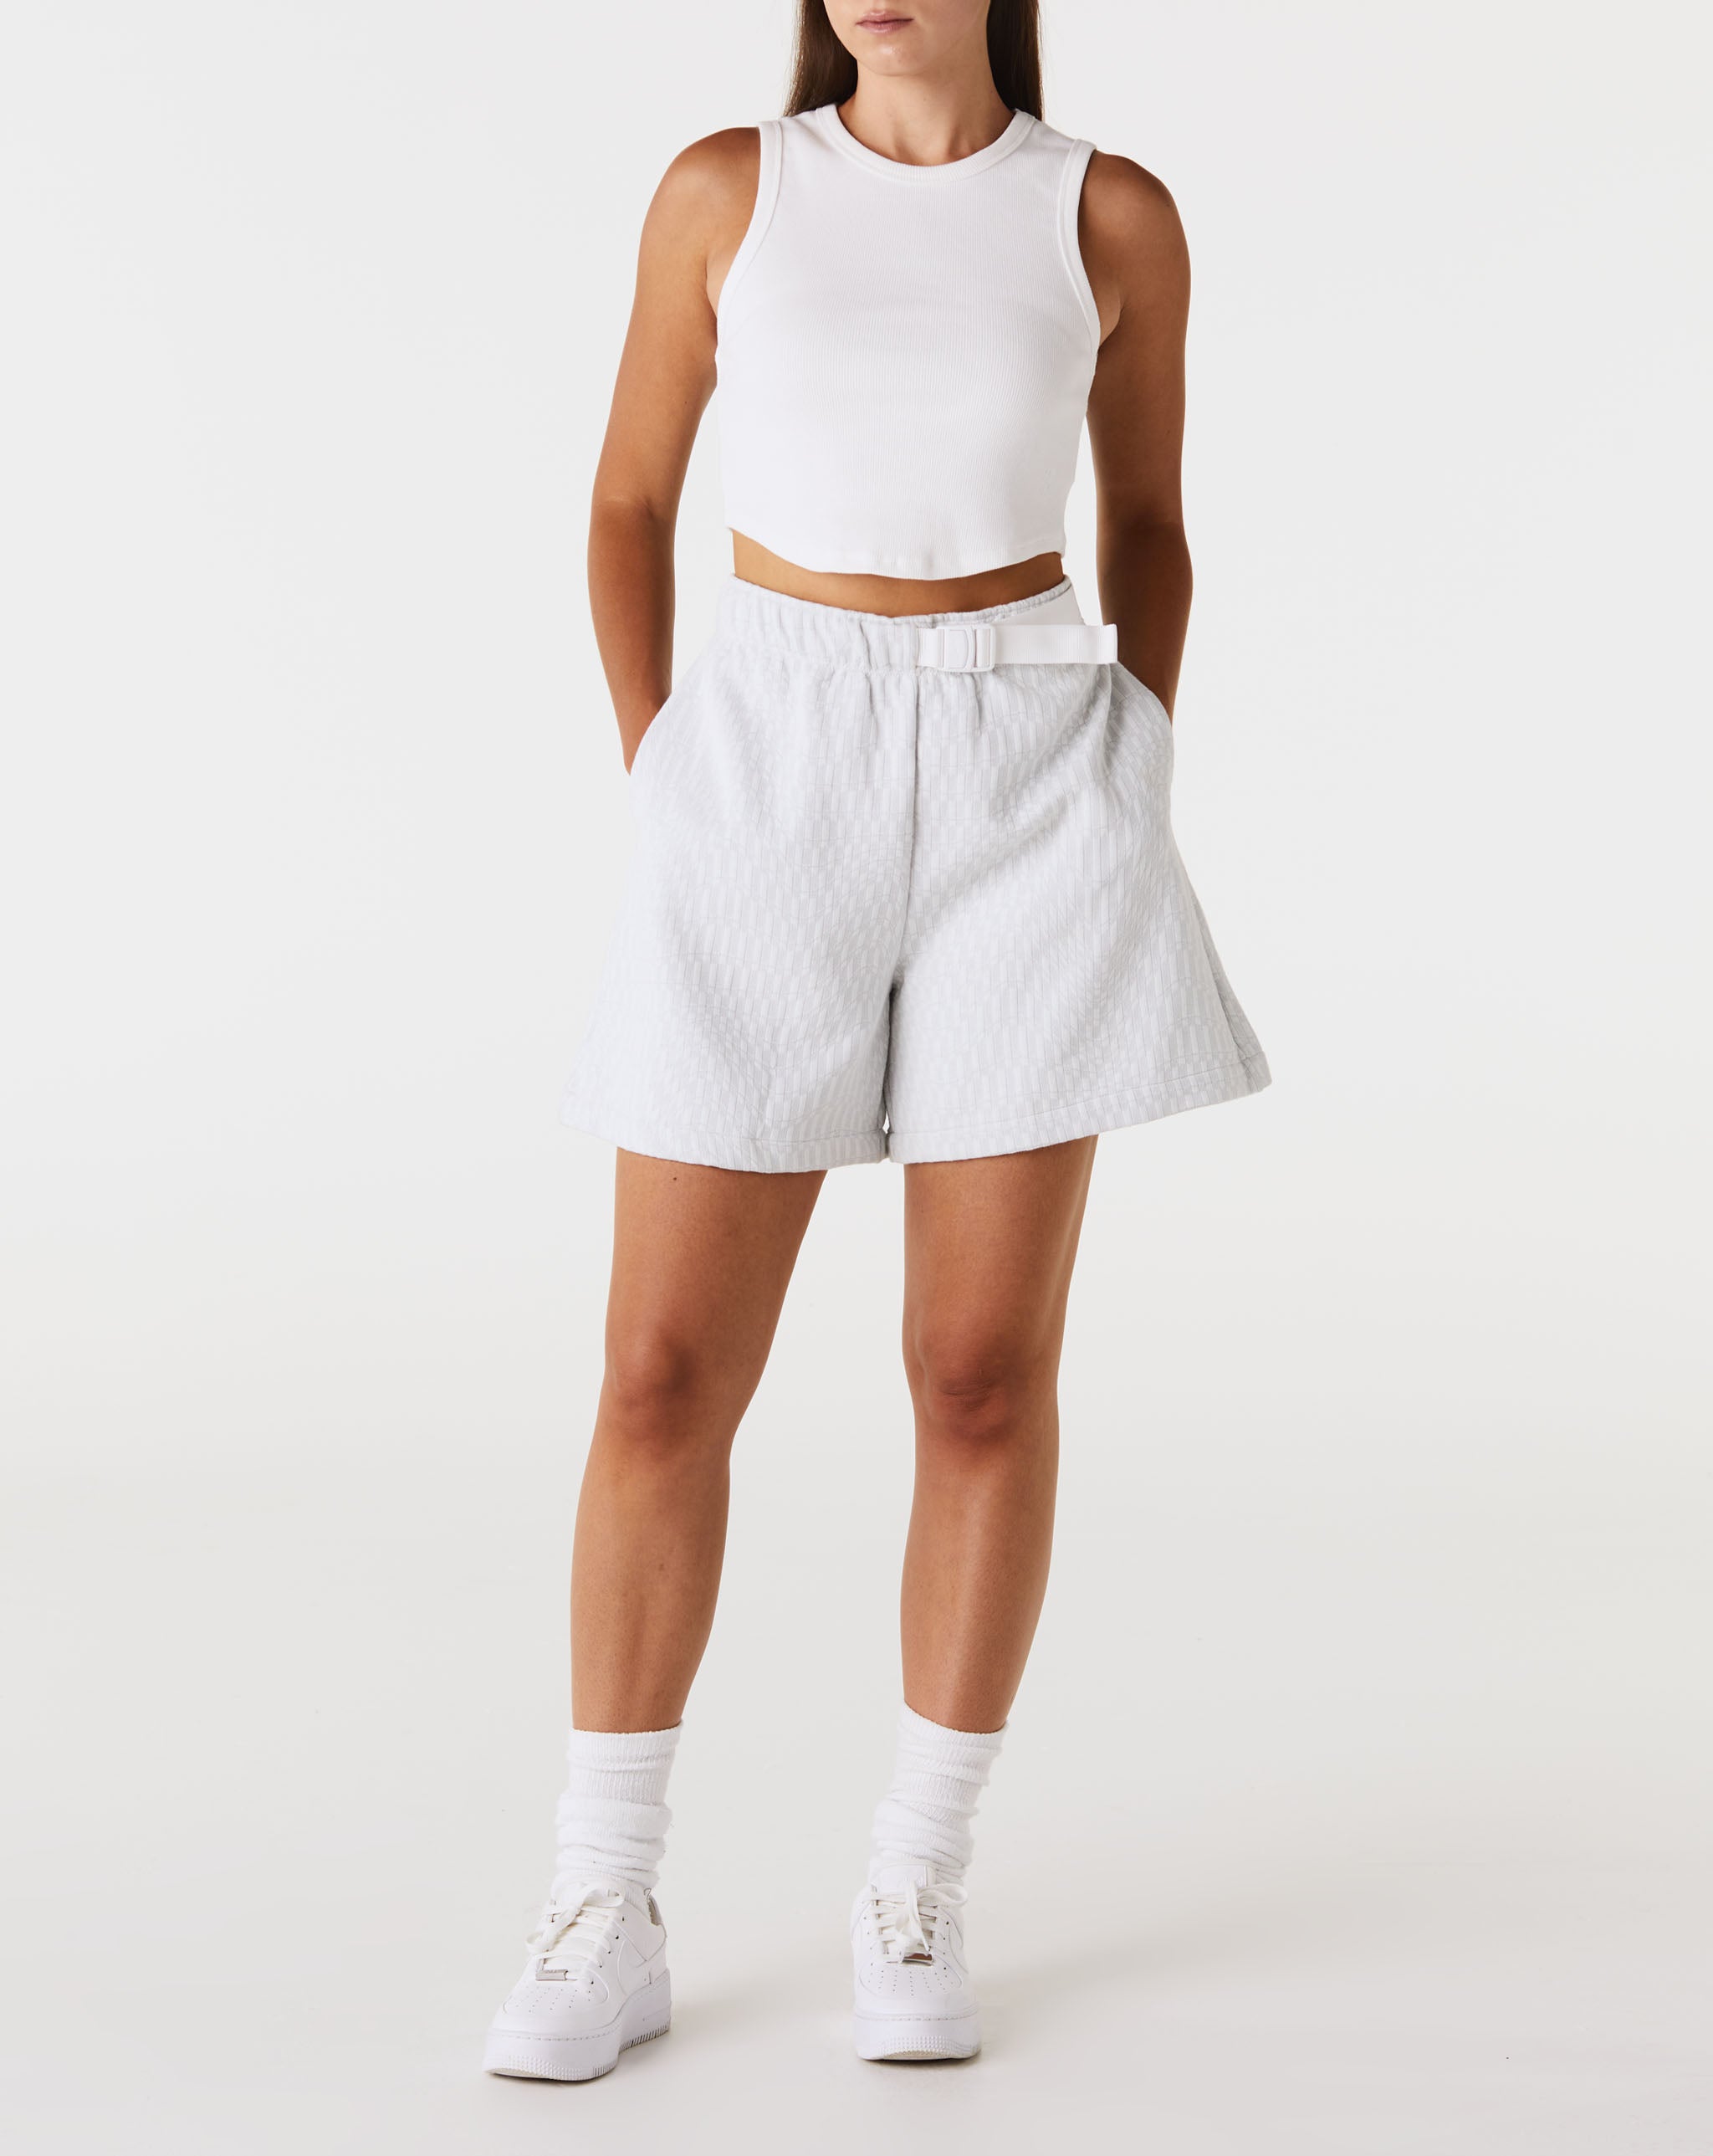 Nike Women's Tech Pack Shorts  - XHIBITION